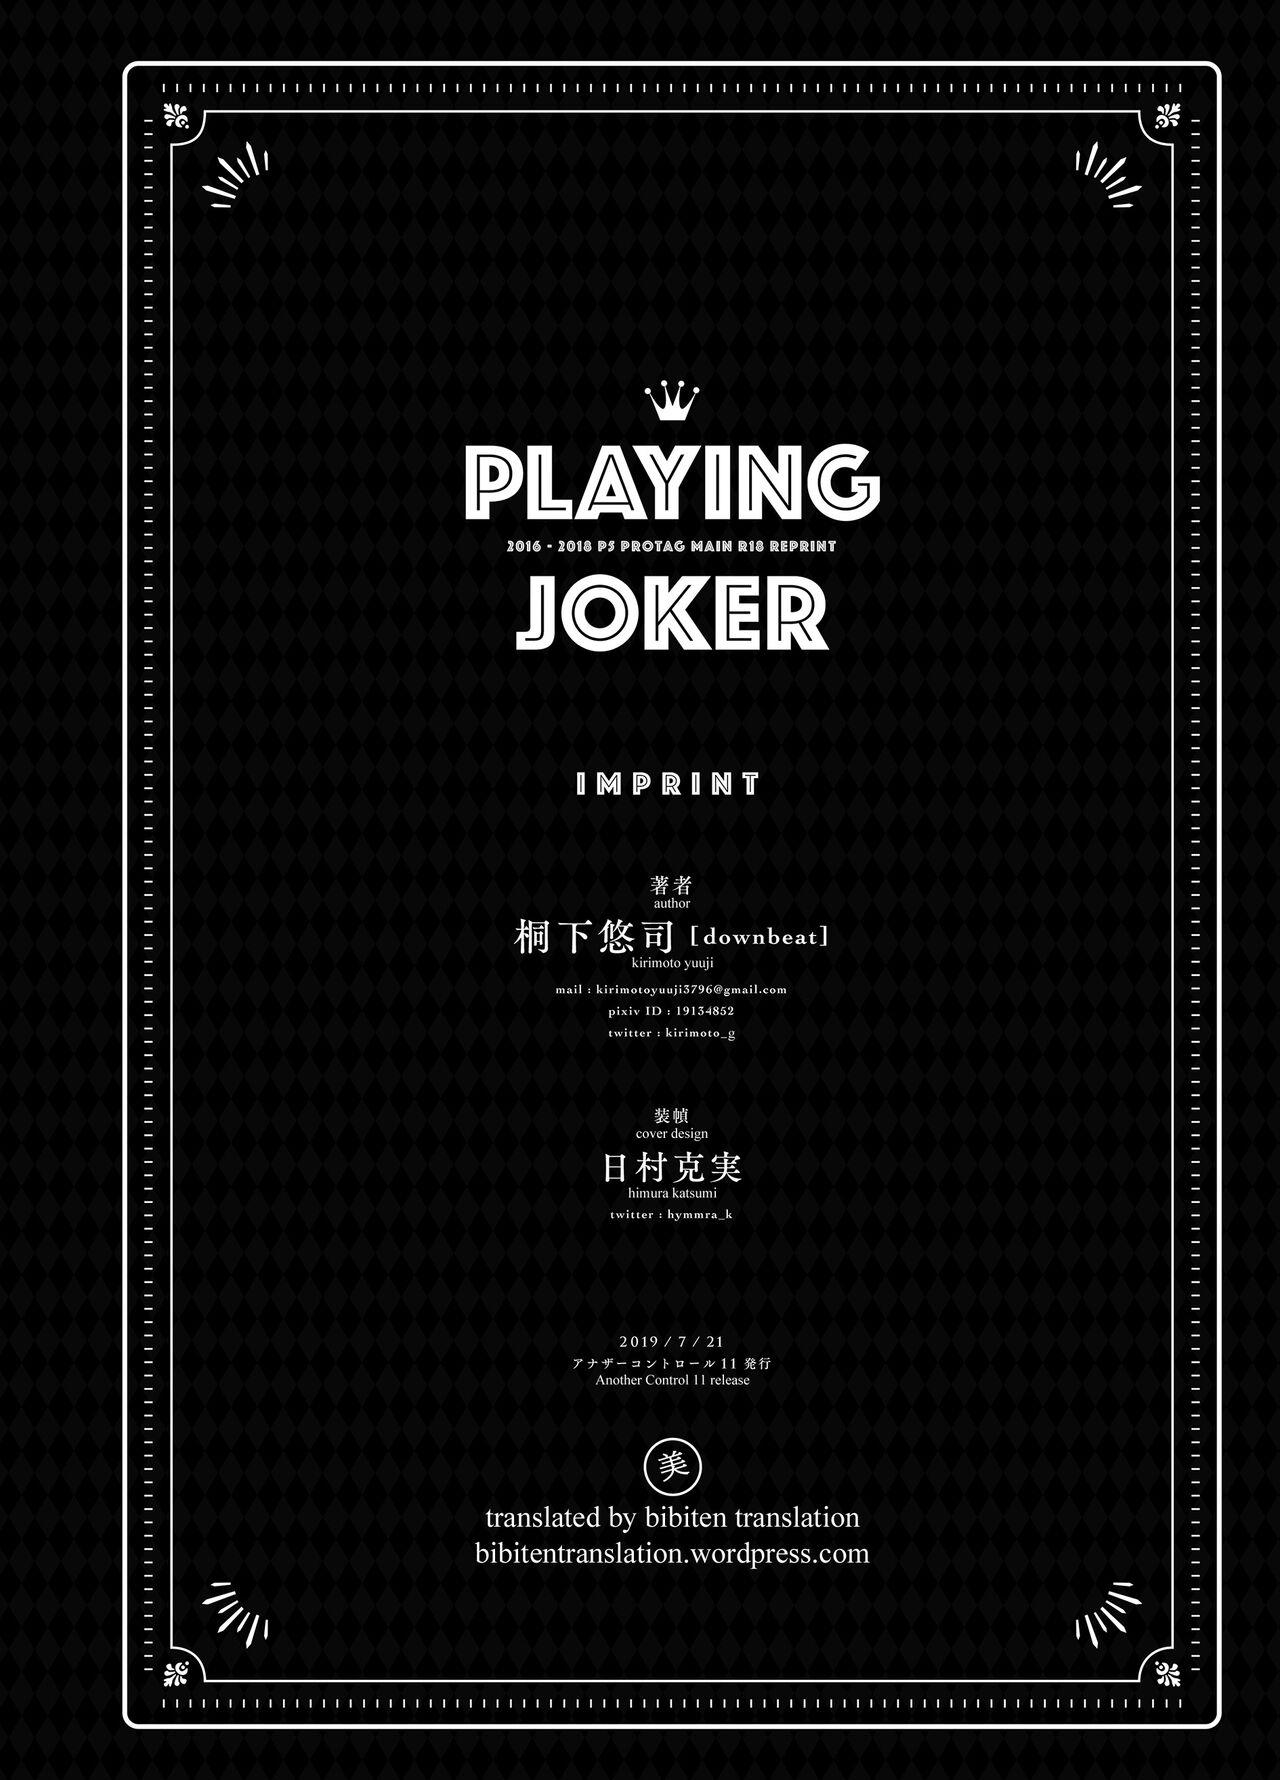 Playing Joker 159